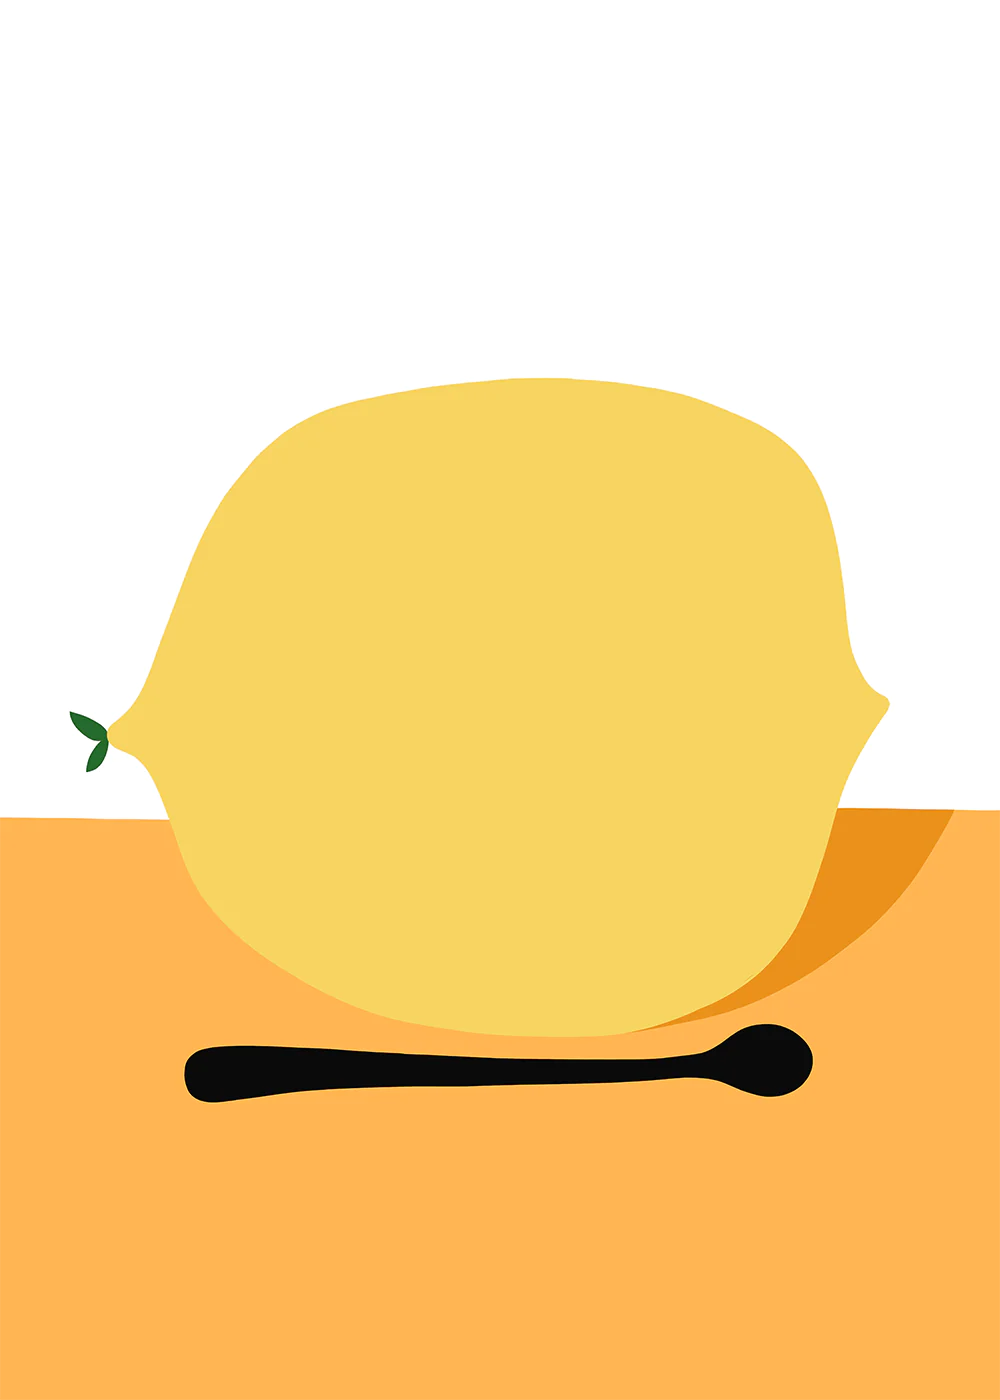 Citron (The Lemon) By Philippe Lareau